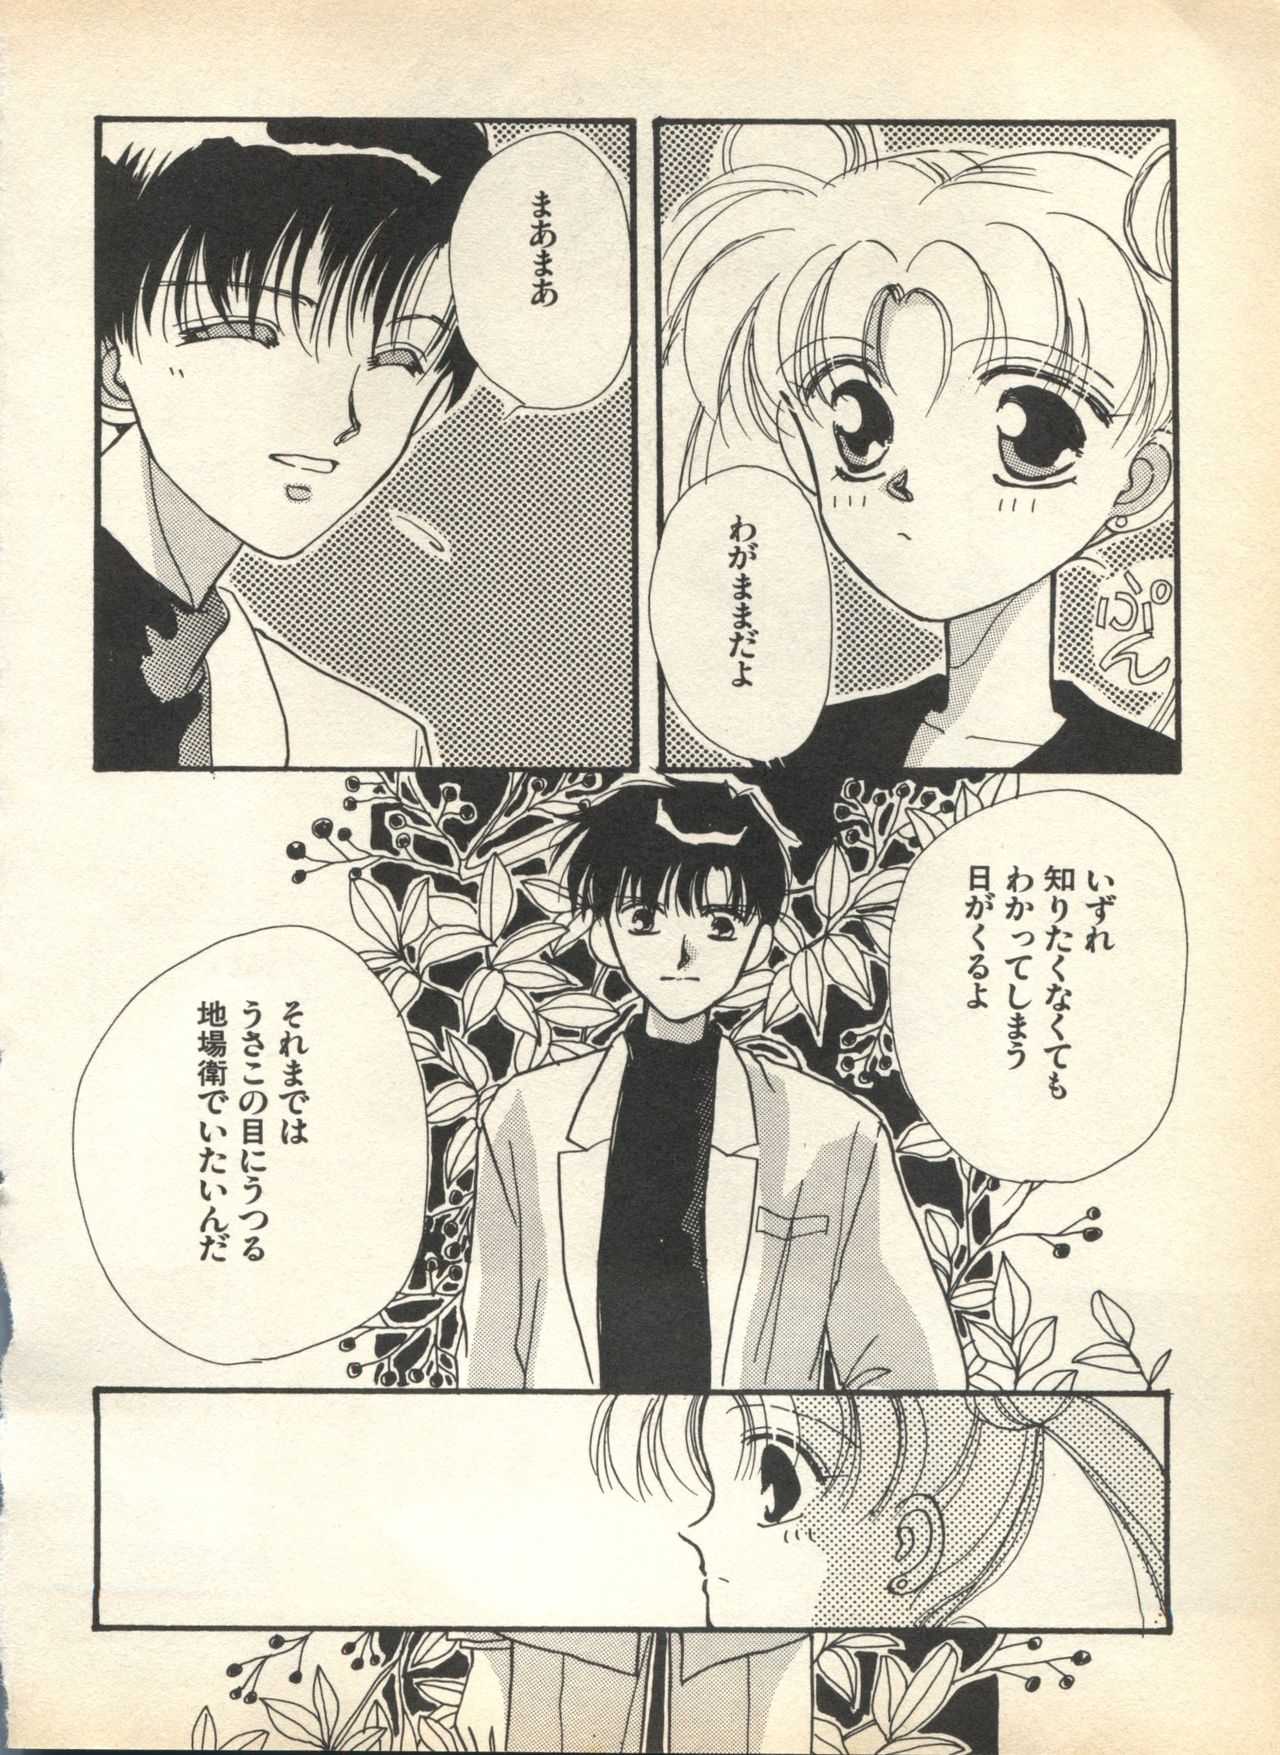 [Anthology] Lunatic Party 7 (Bishoujo Senshi Sailor Moon) 35